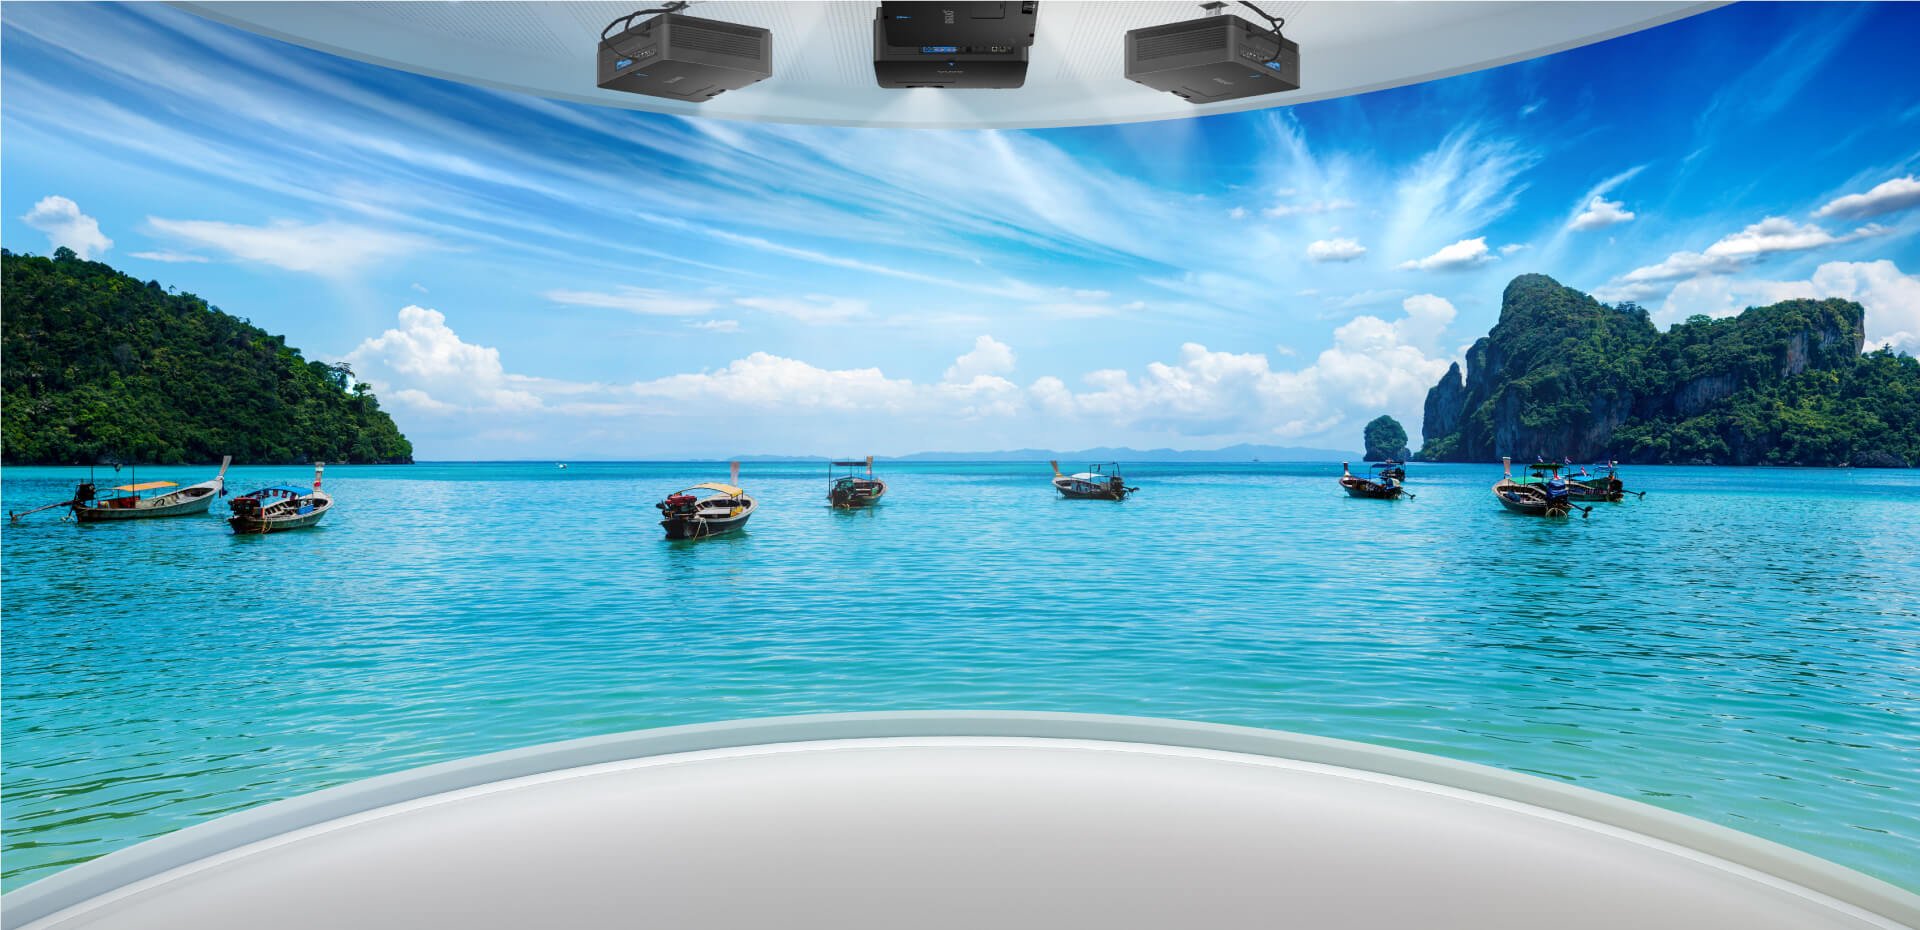 Projektor s flexibilní instalací BenQ LK936ST+ a kalibrací vyvážení bílé zaručuje hladké spojení okrajů obrazu v panoramatickém zobrazení, například při letové simulaci